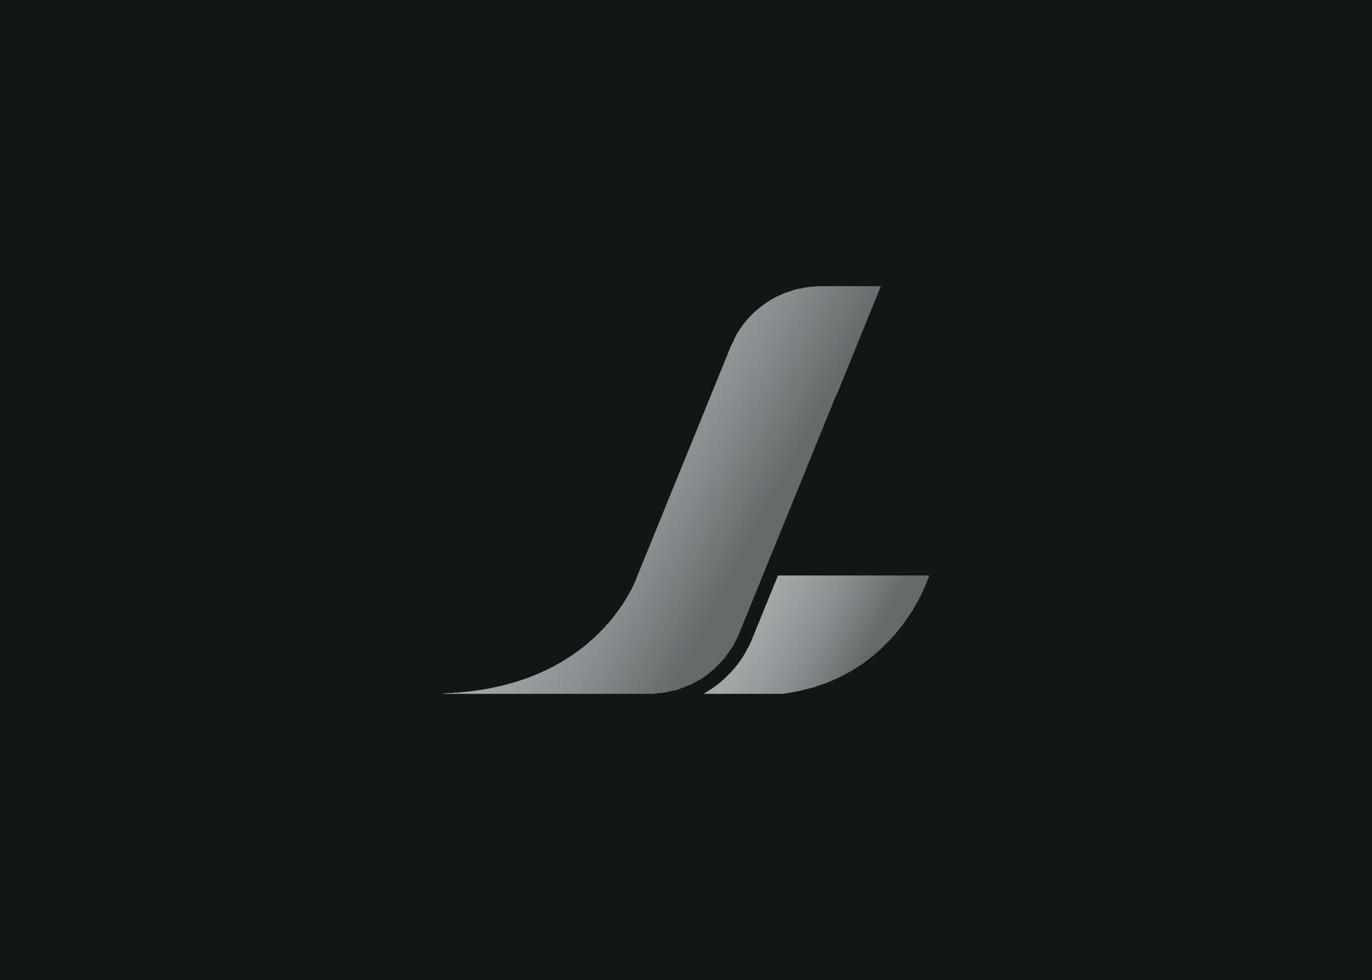 arquivo de vetor gratuito de design de logotipo de letra jl